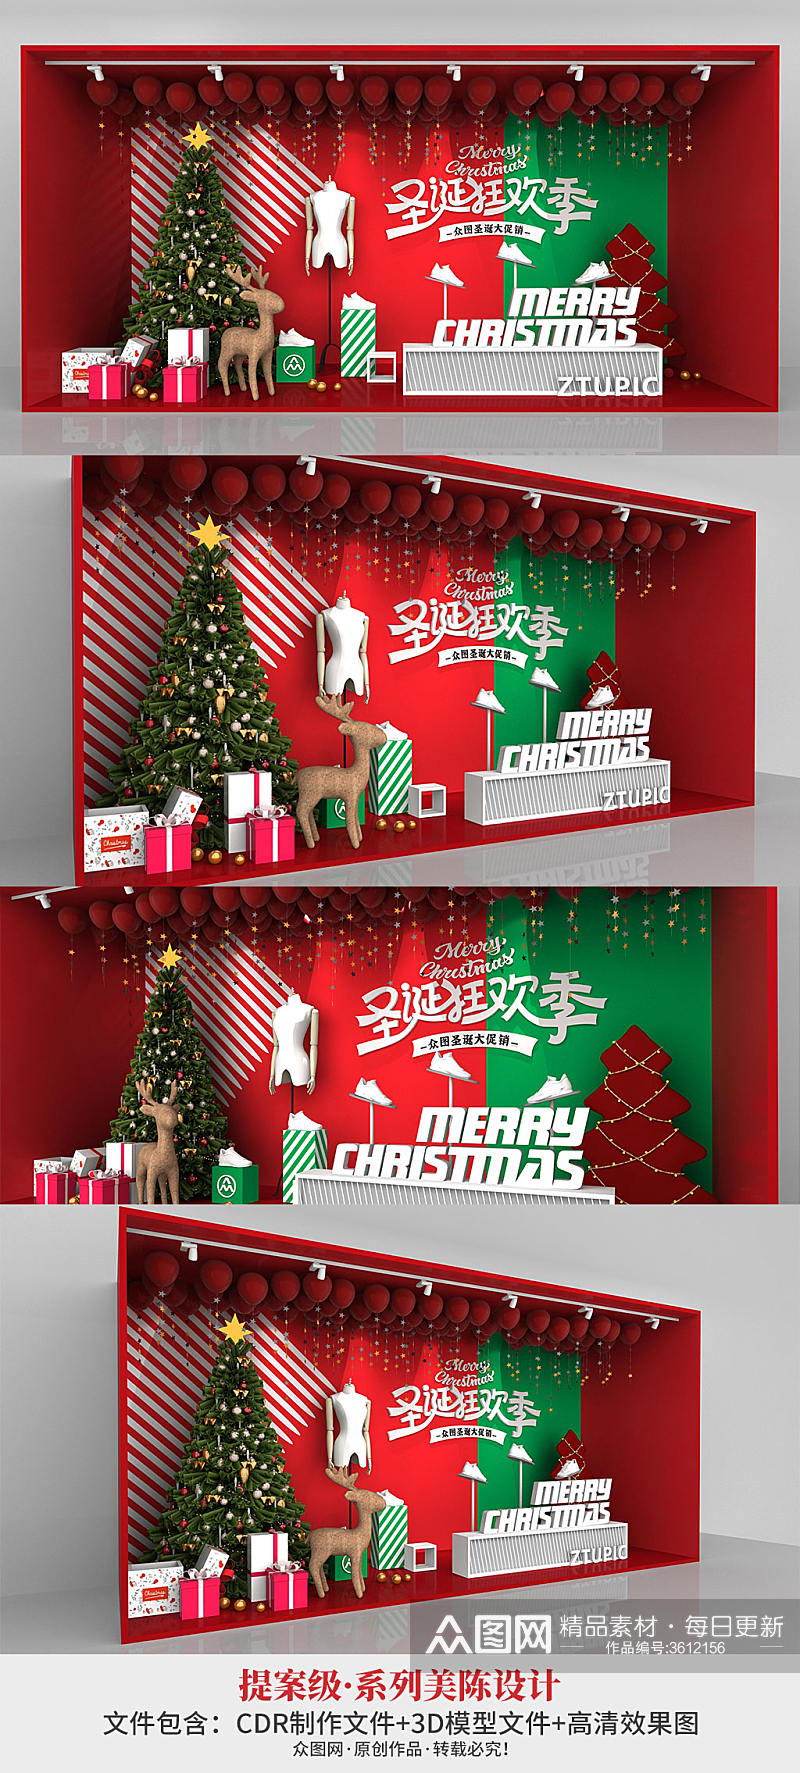 红色绿色圣诞节美陈圣诞节橱窗设计素材